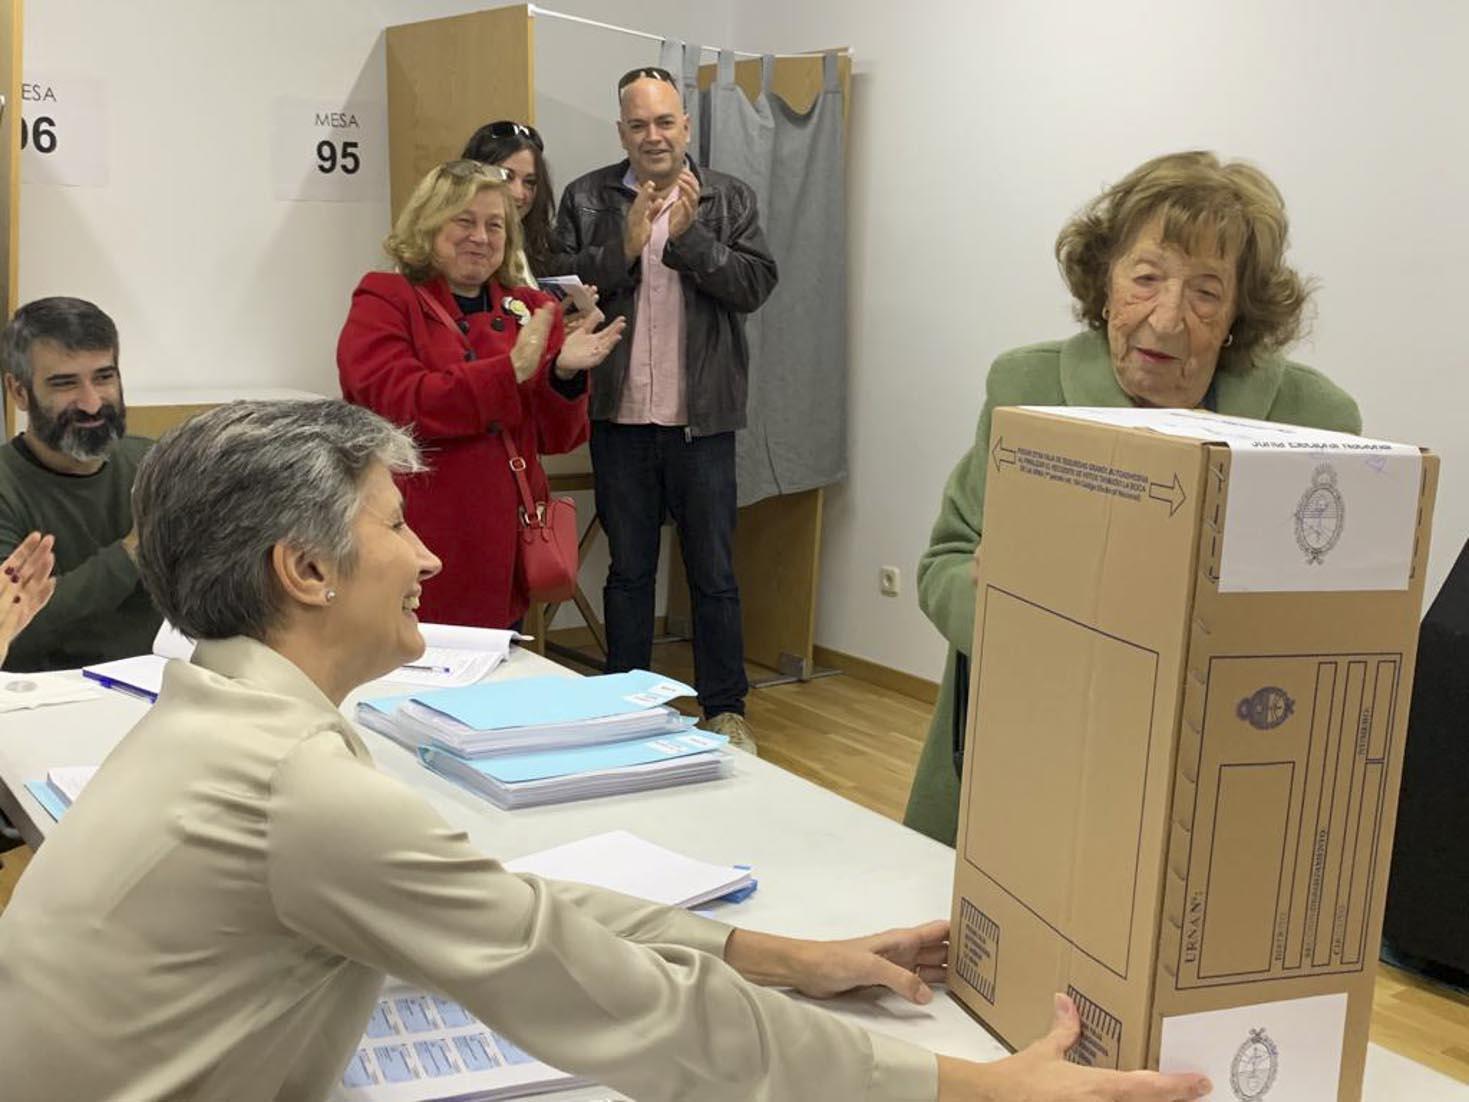 Largas colas de argentinos sufragar votar en Madrid: votó una señora de 93 años